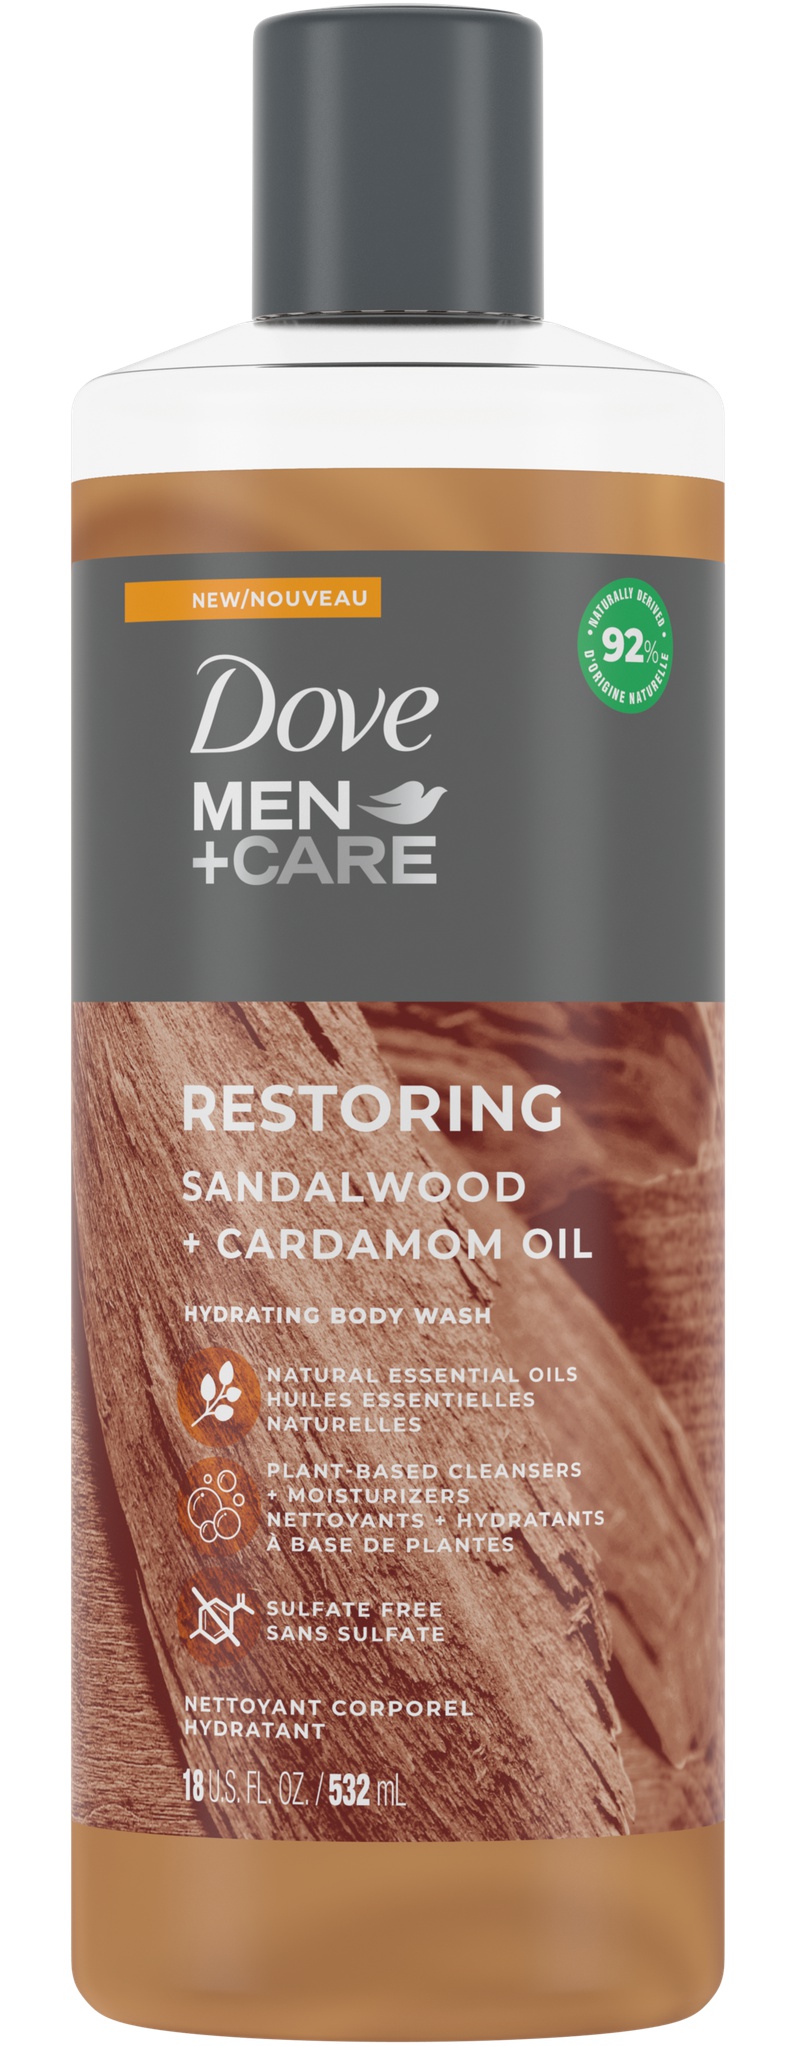 Dove Men+care Sandalwood + Cardamom Oil Body Wash